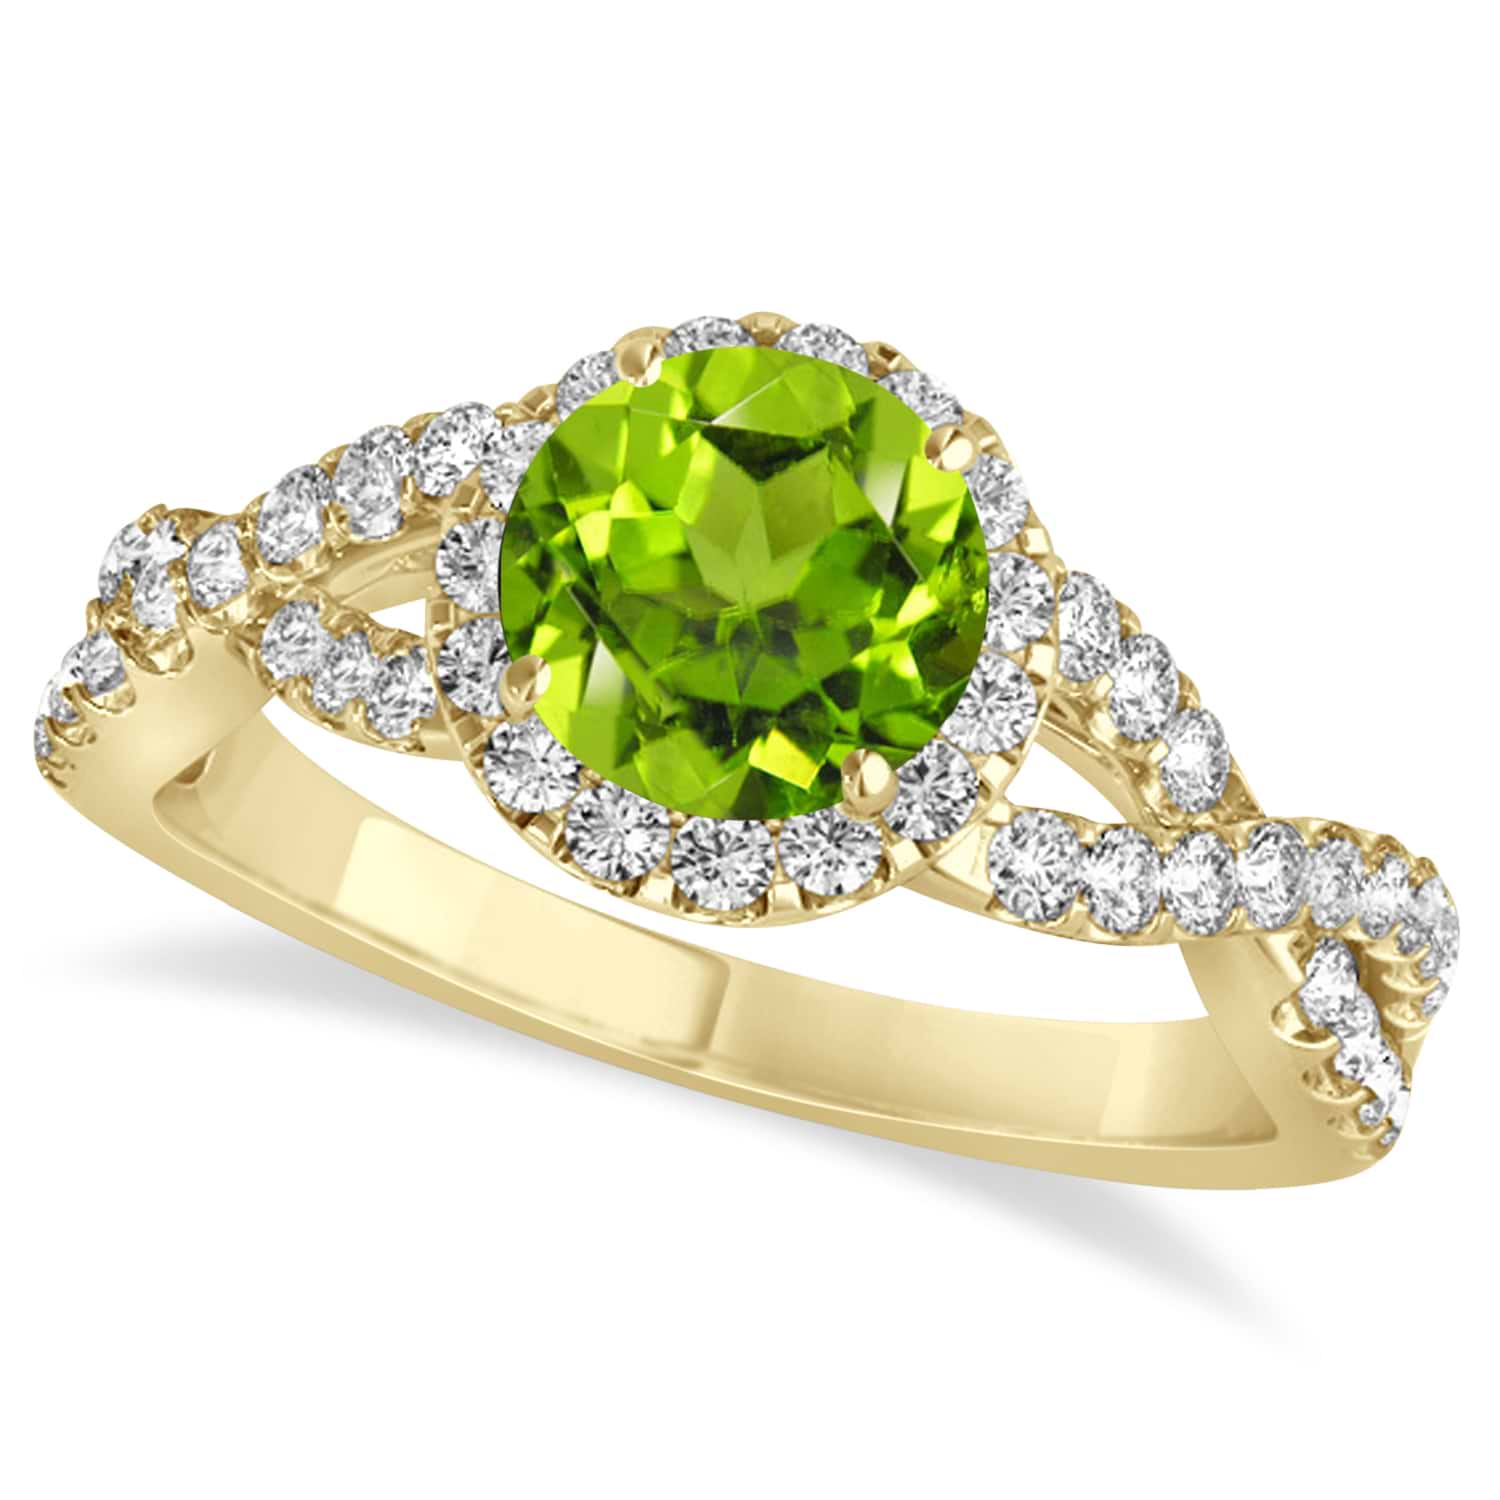 Peridot & Diamond Twisted Engagement Ring 14k Yellow Gold 1.35ct